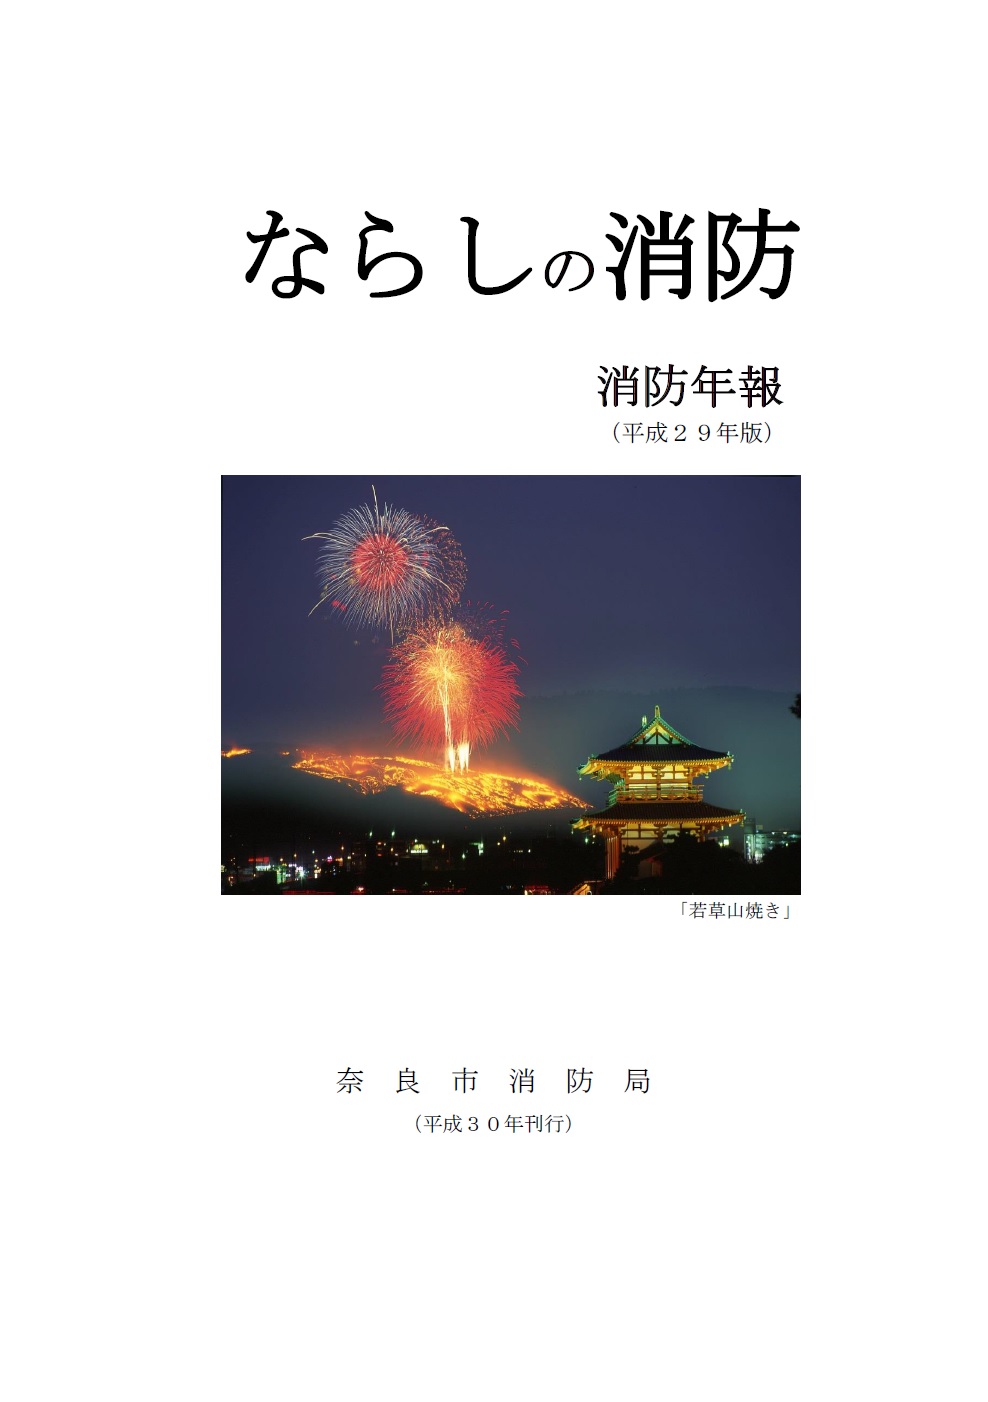 奈良市消防局「消防年報」を掲載していますの画像